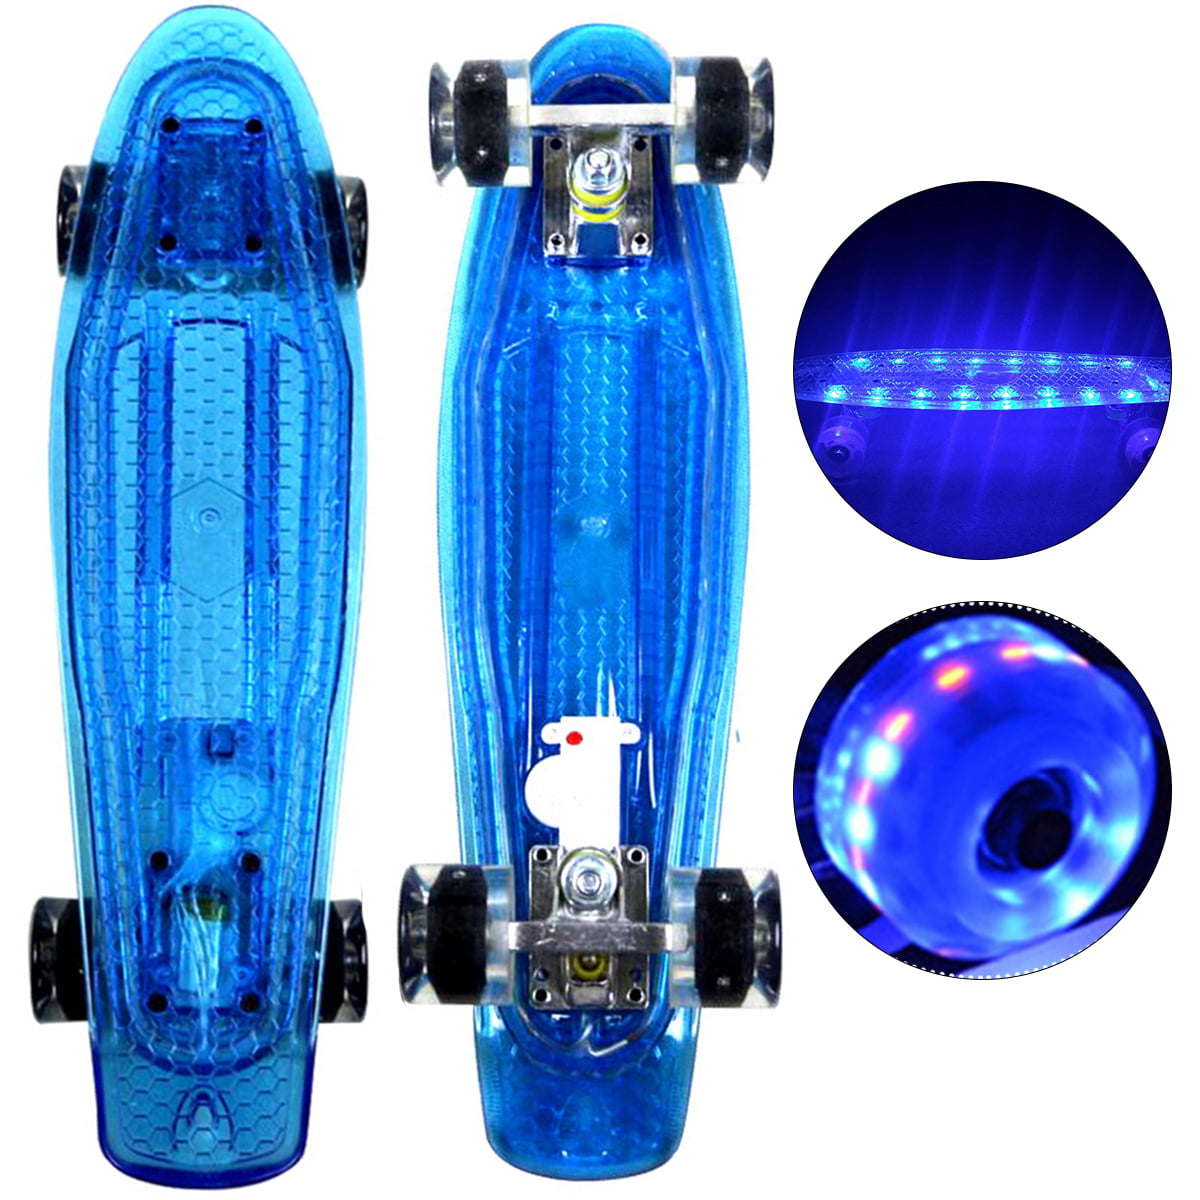 22" Skateboard Complete Penny Board LED Cruiser Plastic Skateboard Kids Gift NEW 